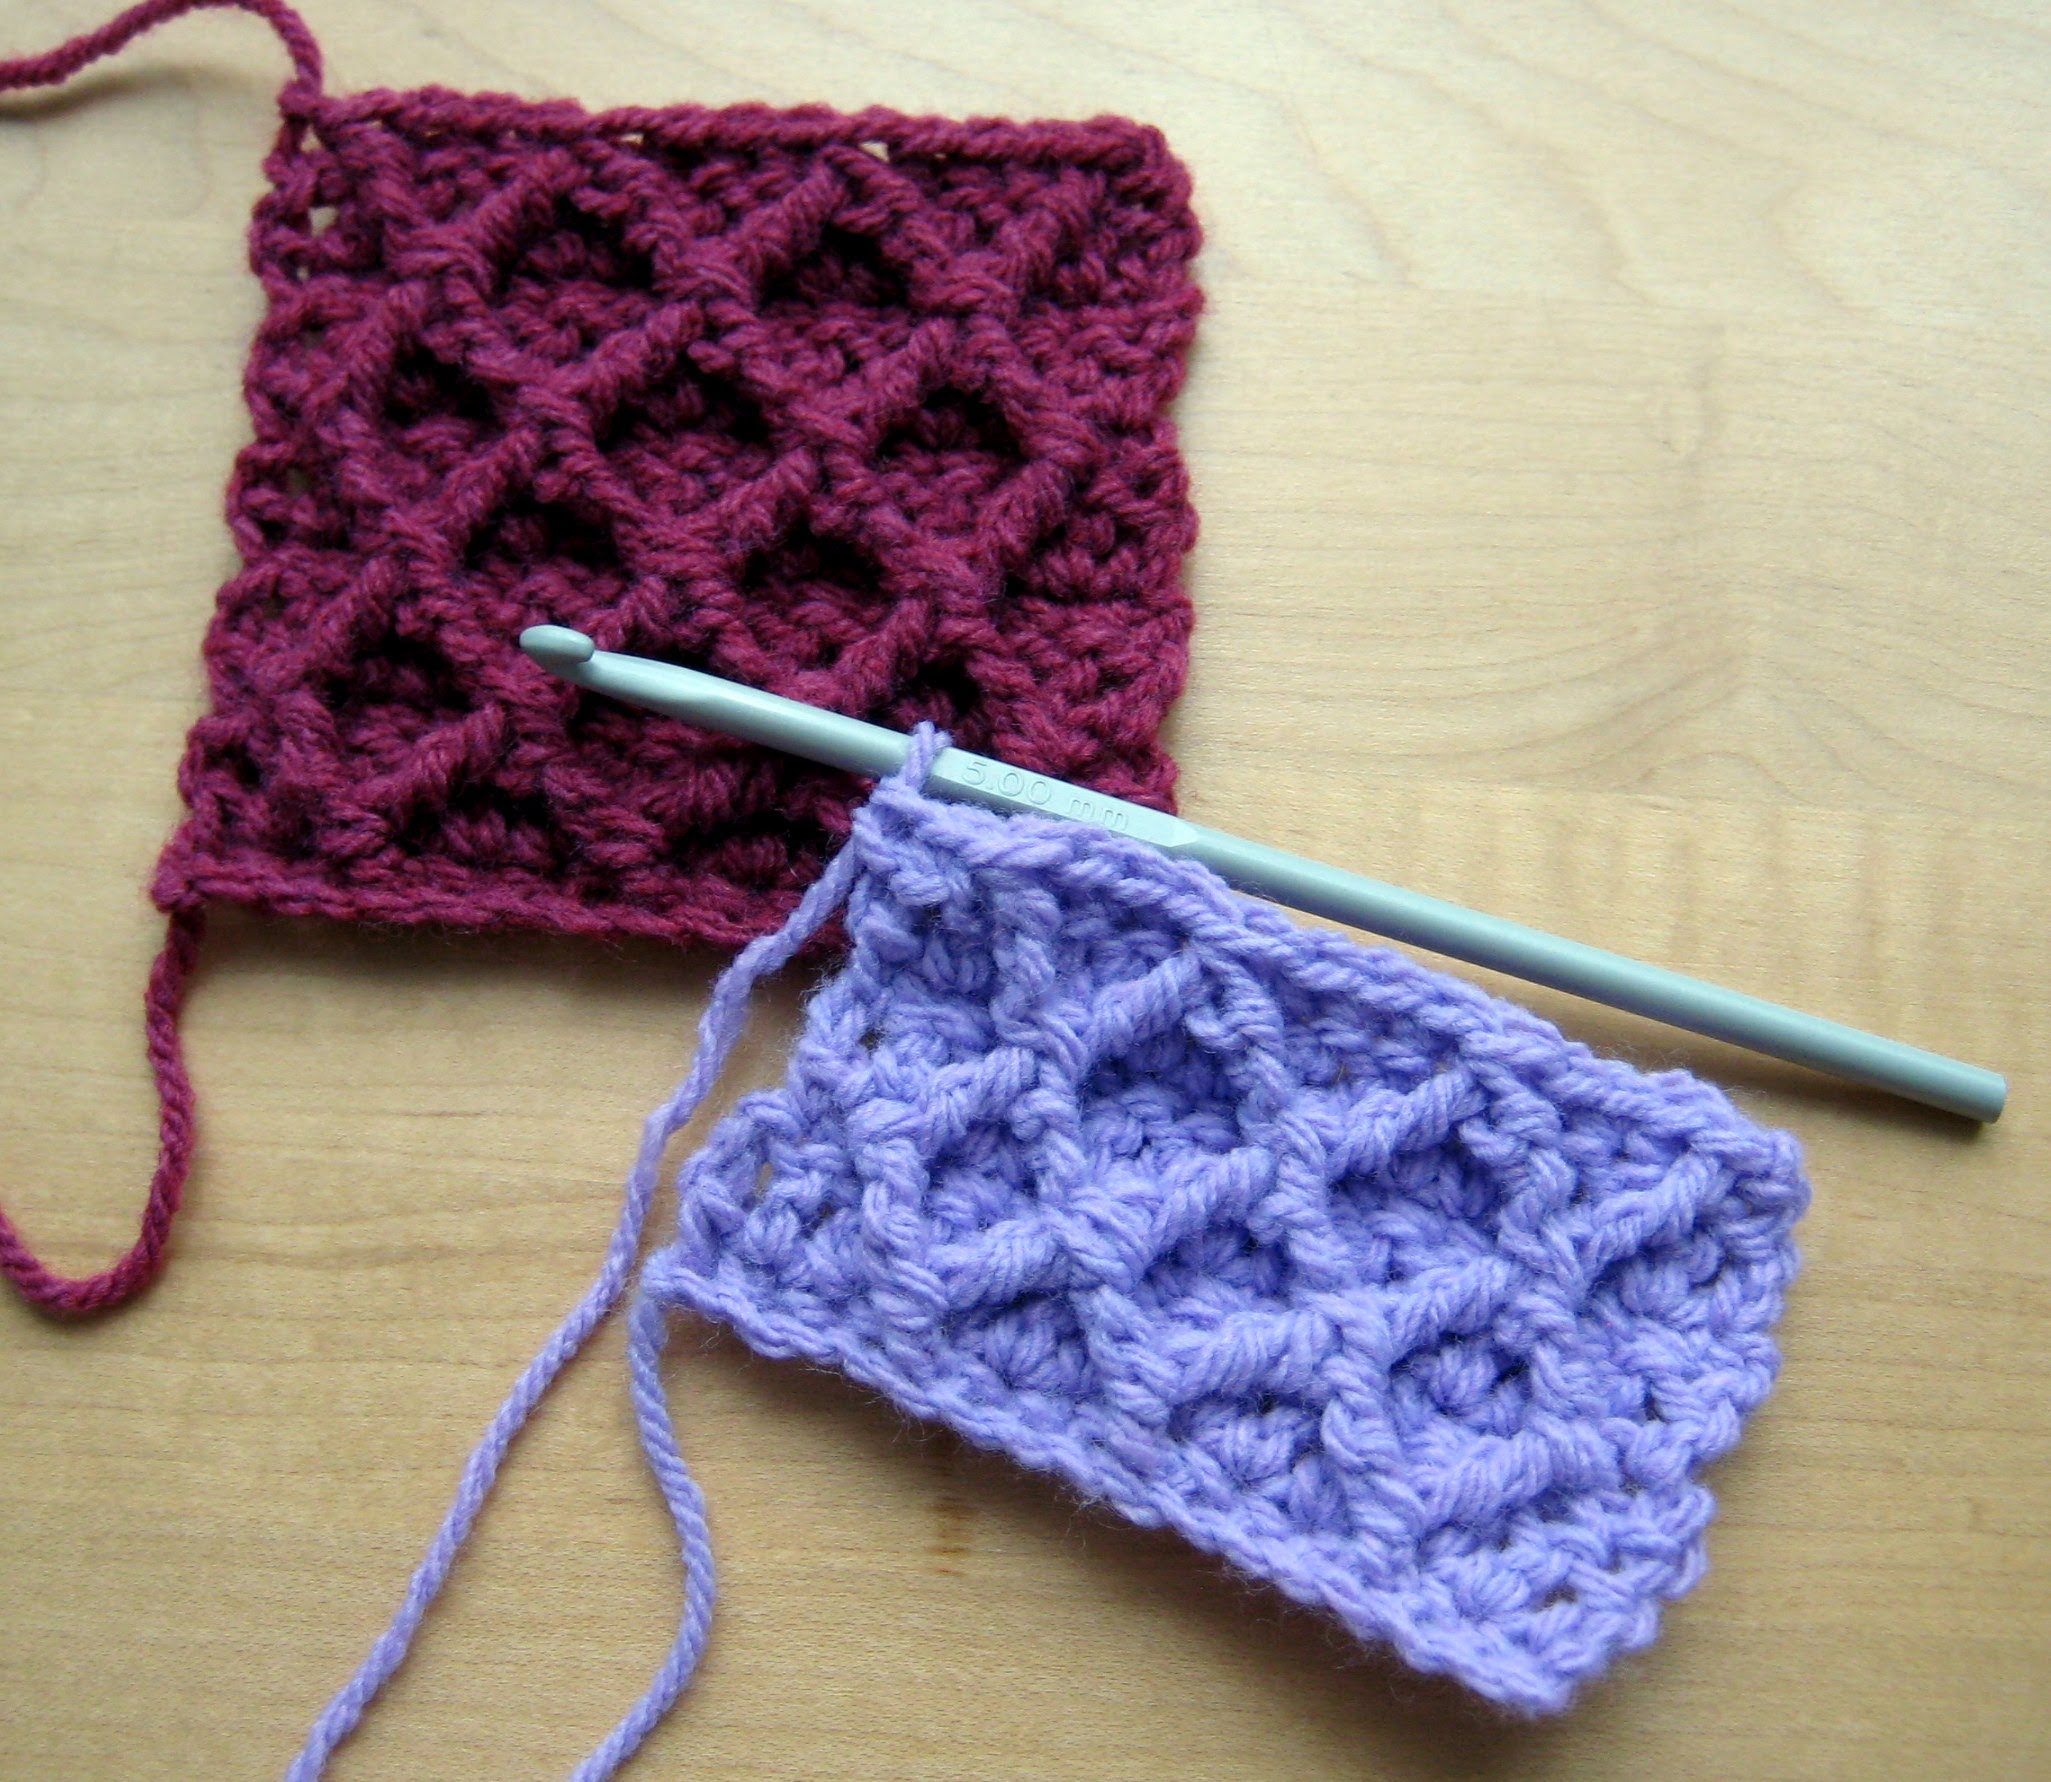 easy crochet stitches - single crochet stitch nprpxuv